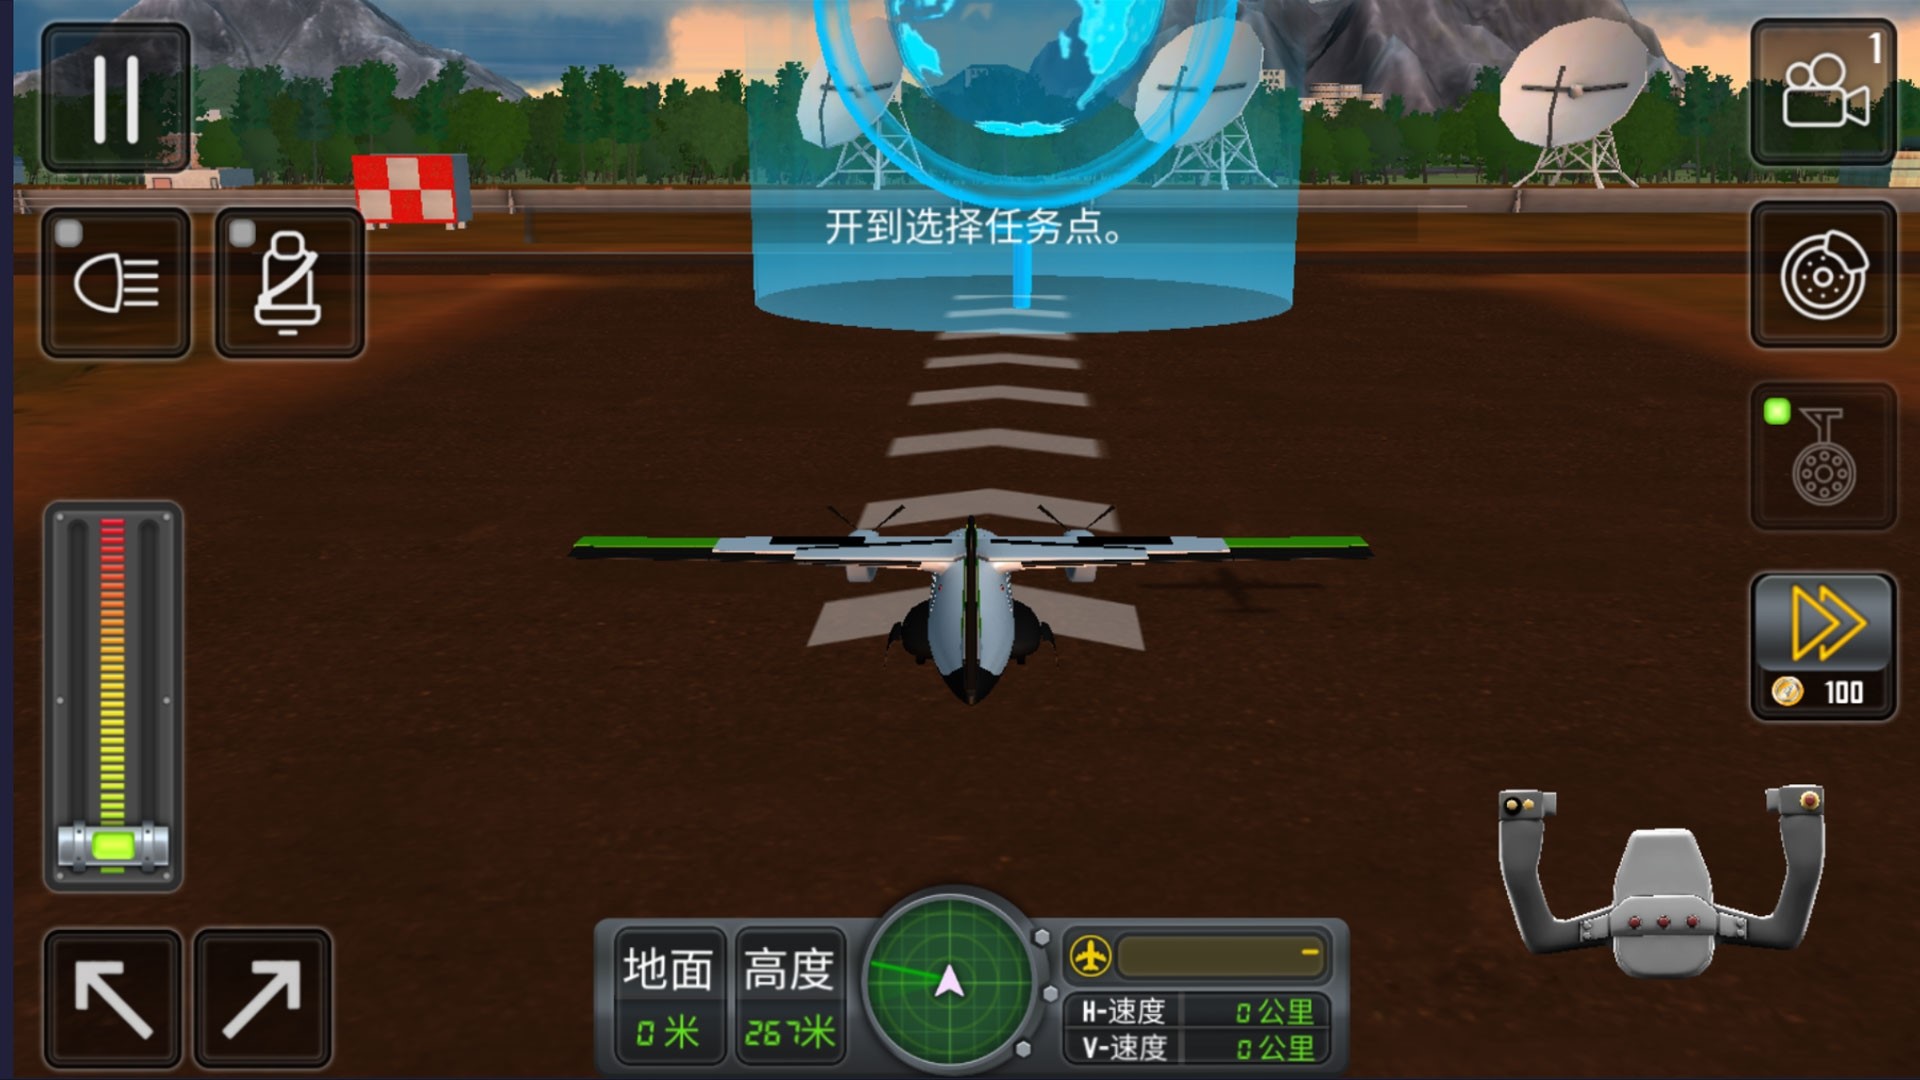 开飞机模拟器图3